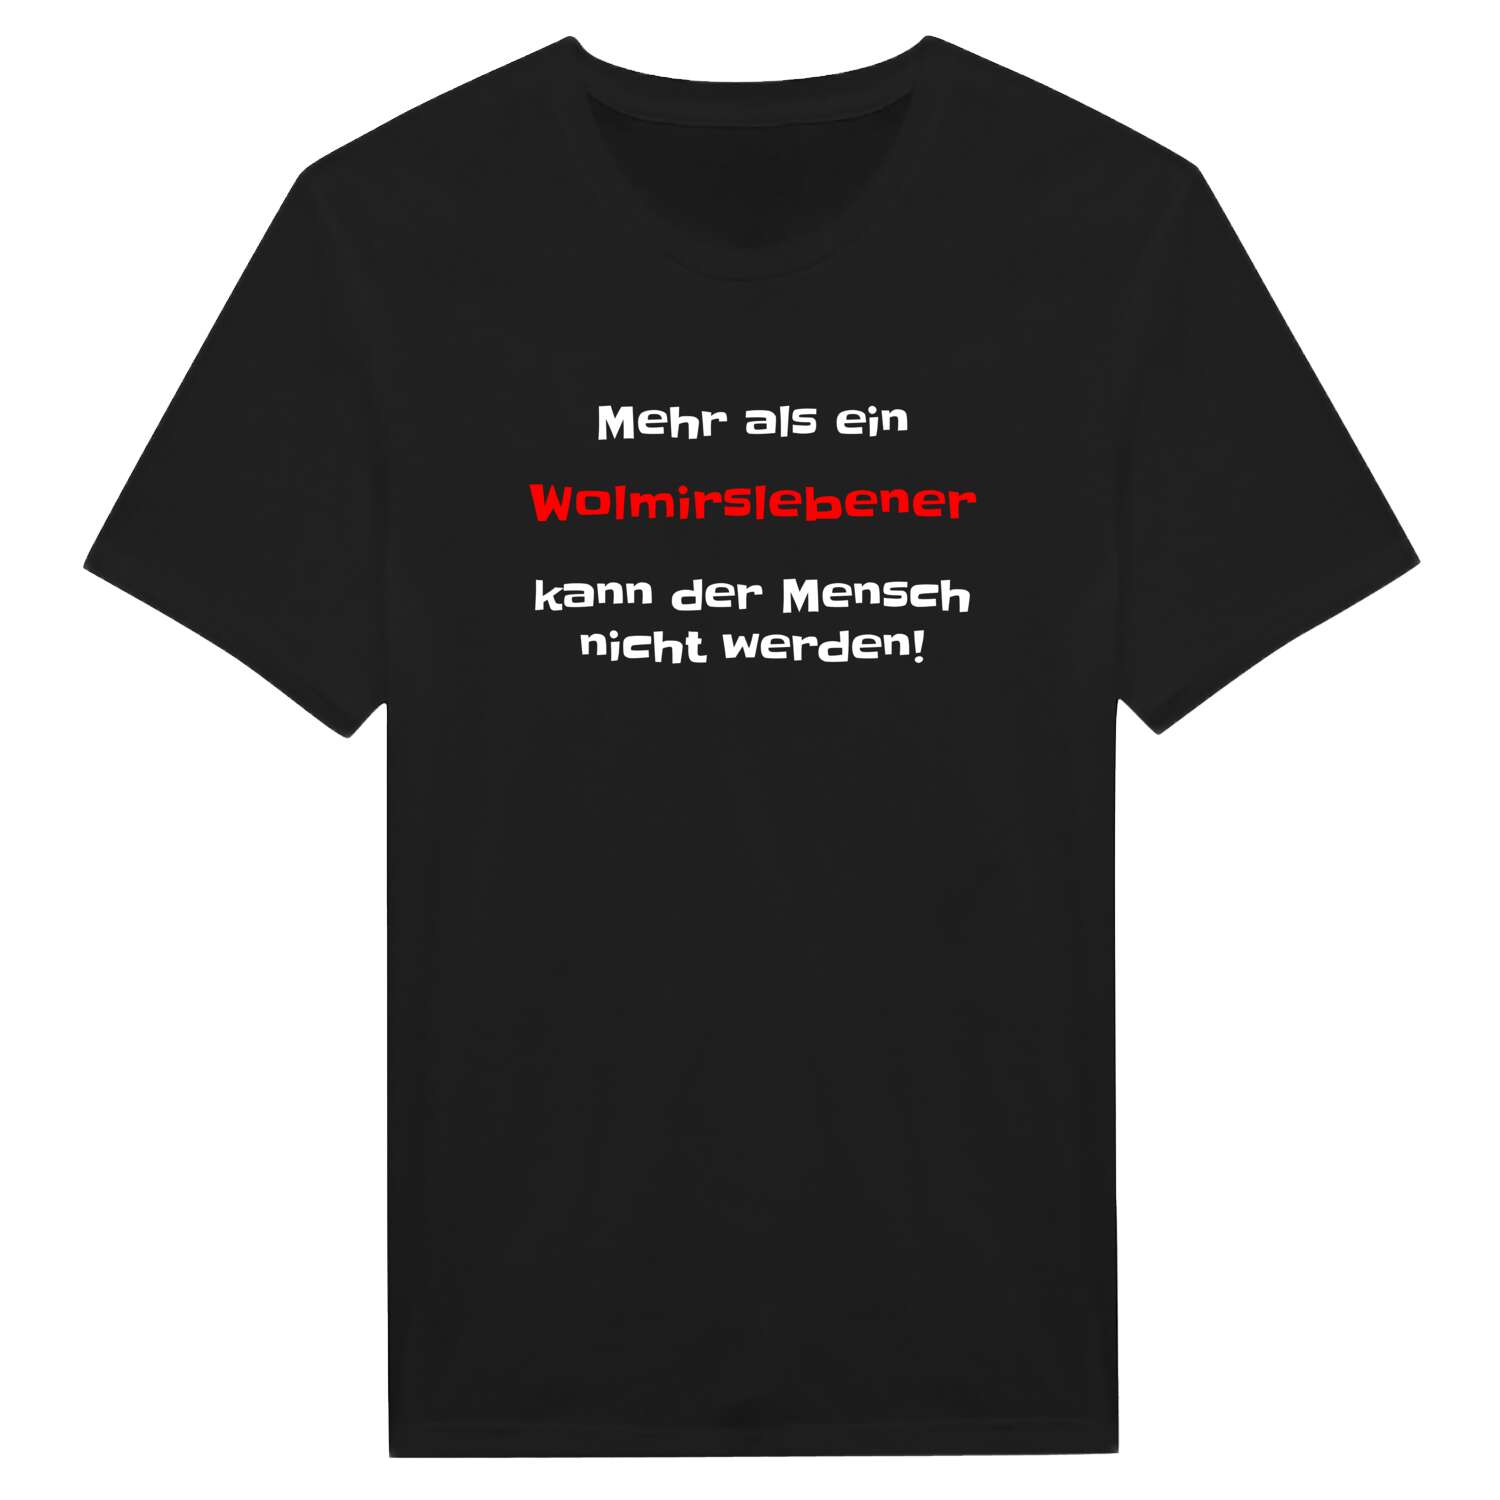 Wolmirsleben T-Shirt »Mehr als ein«